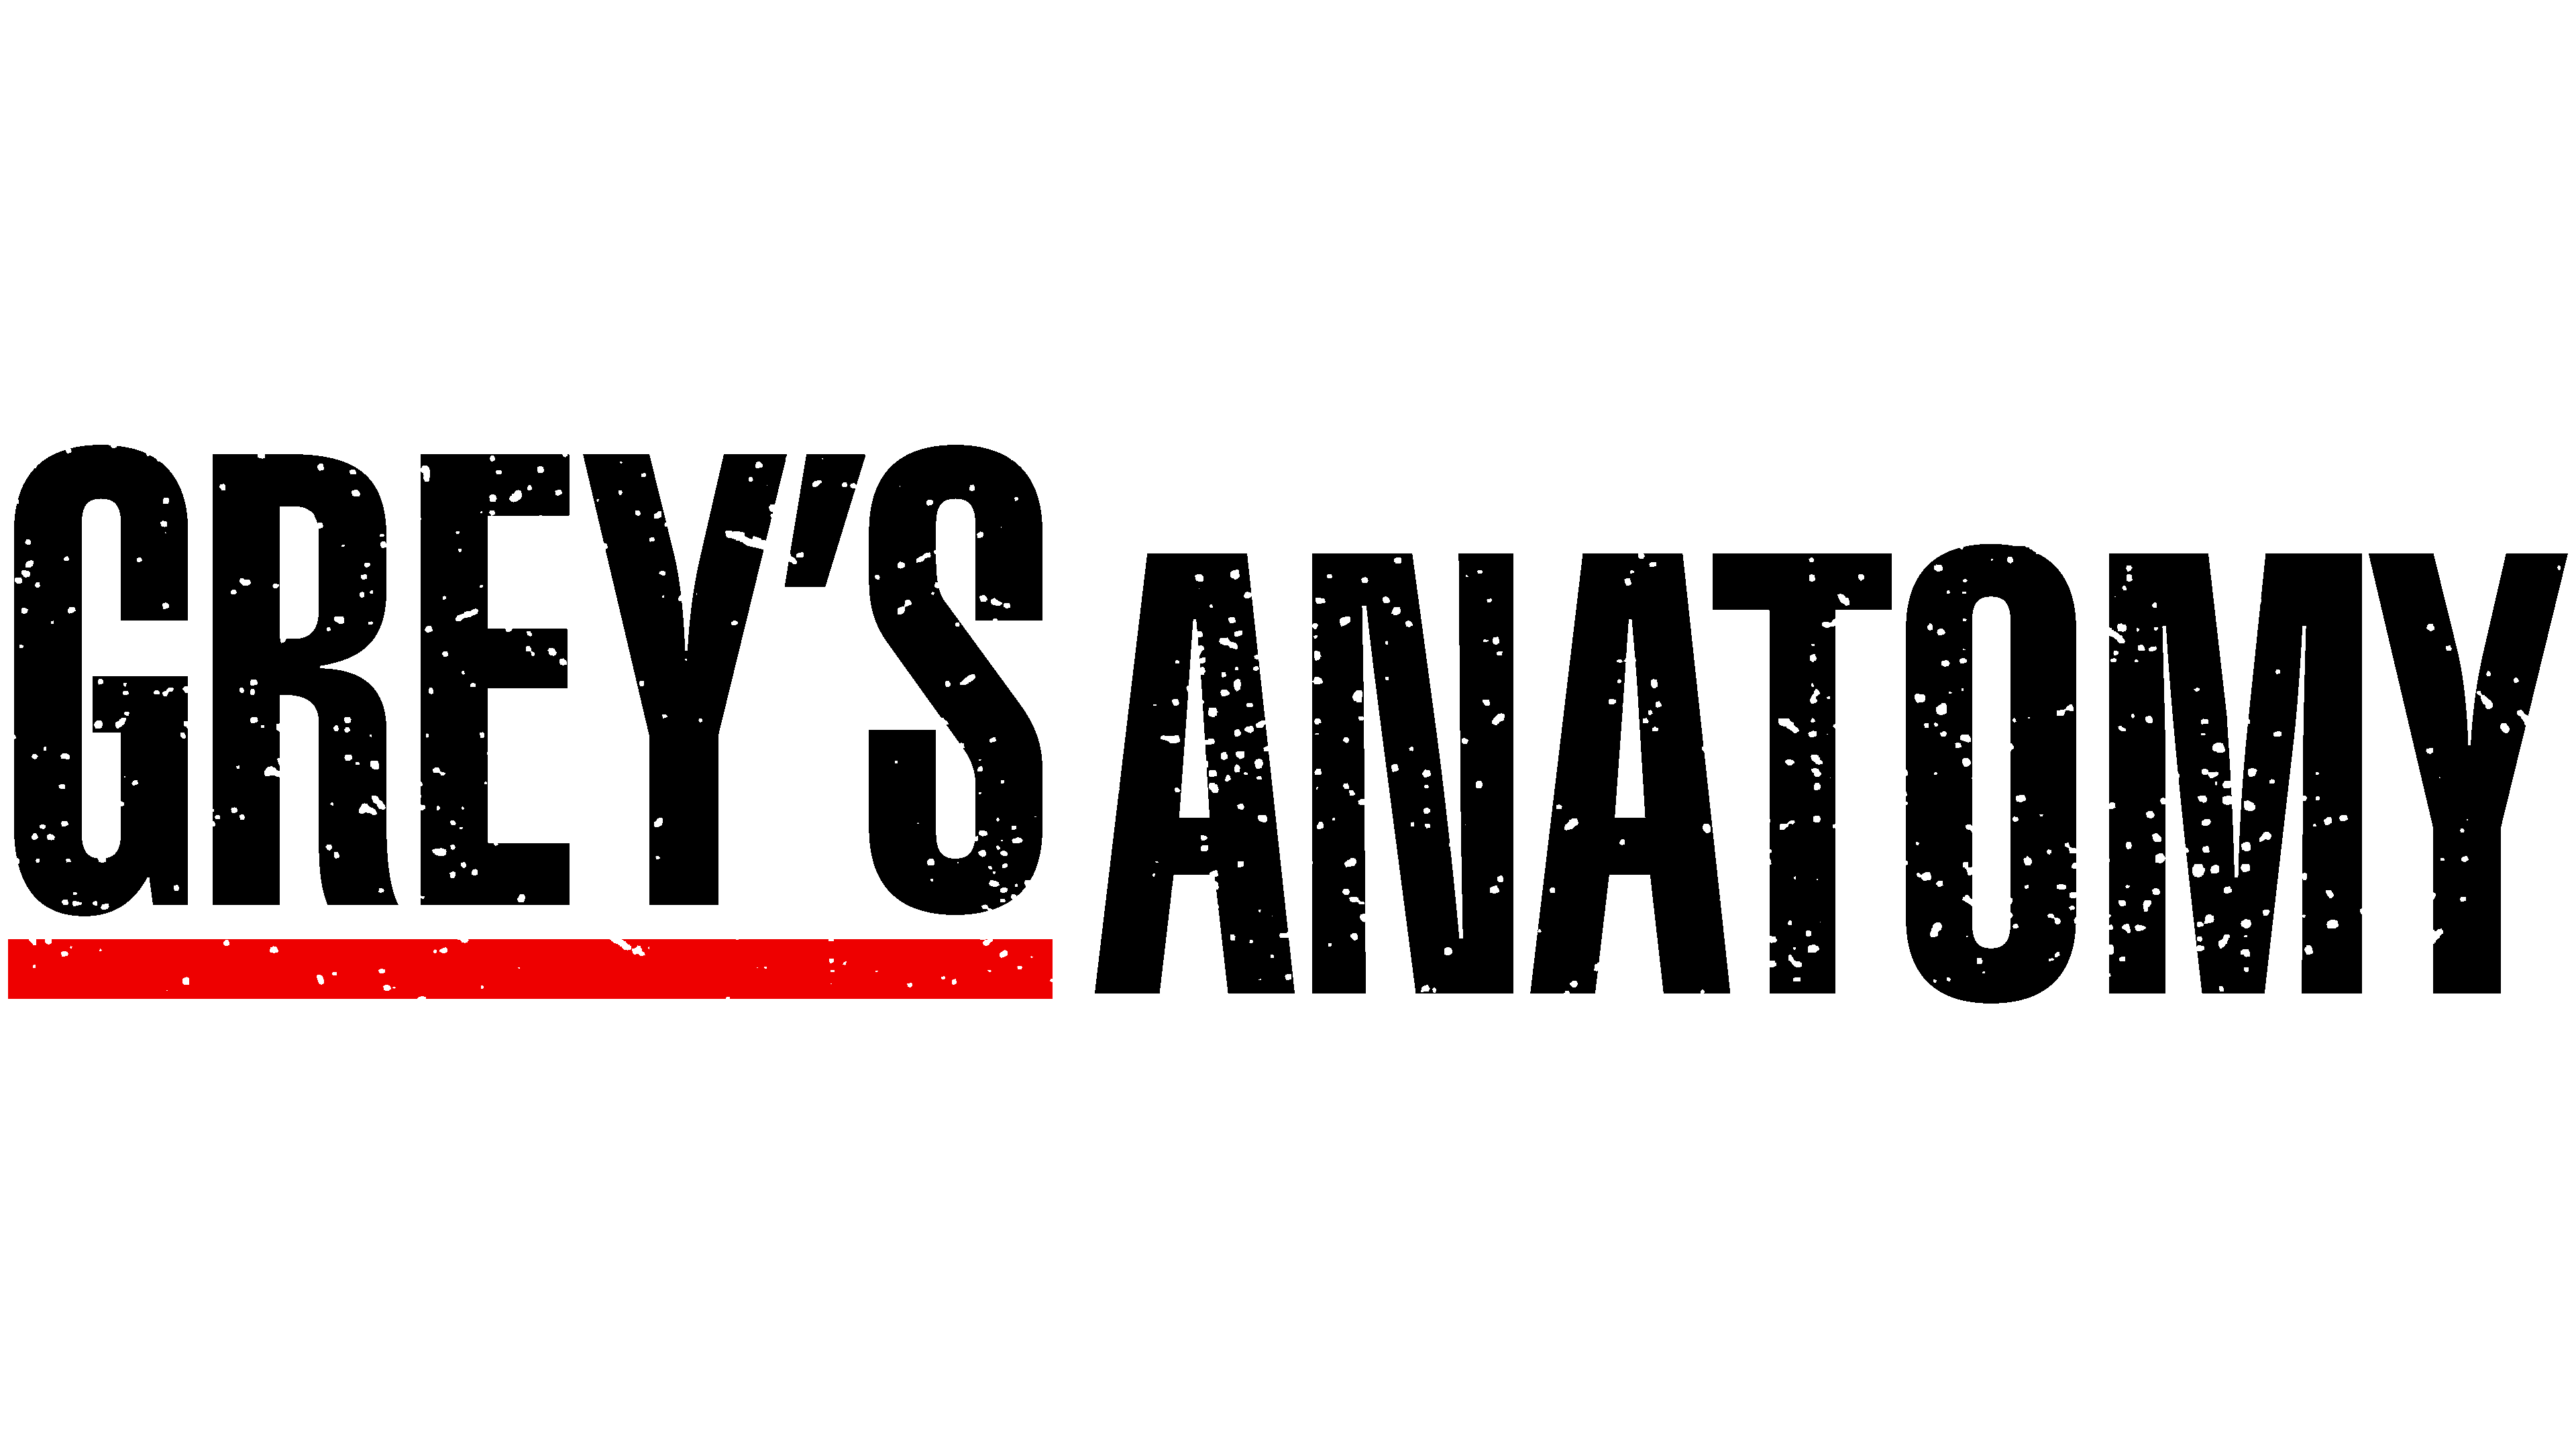 Grey’s Anatomy Logo